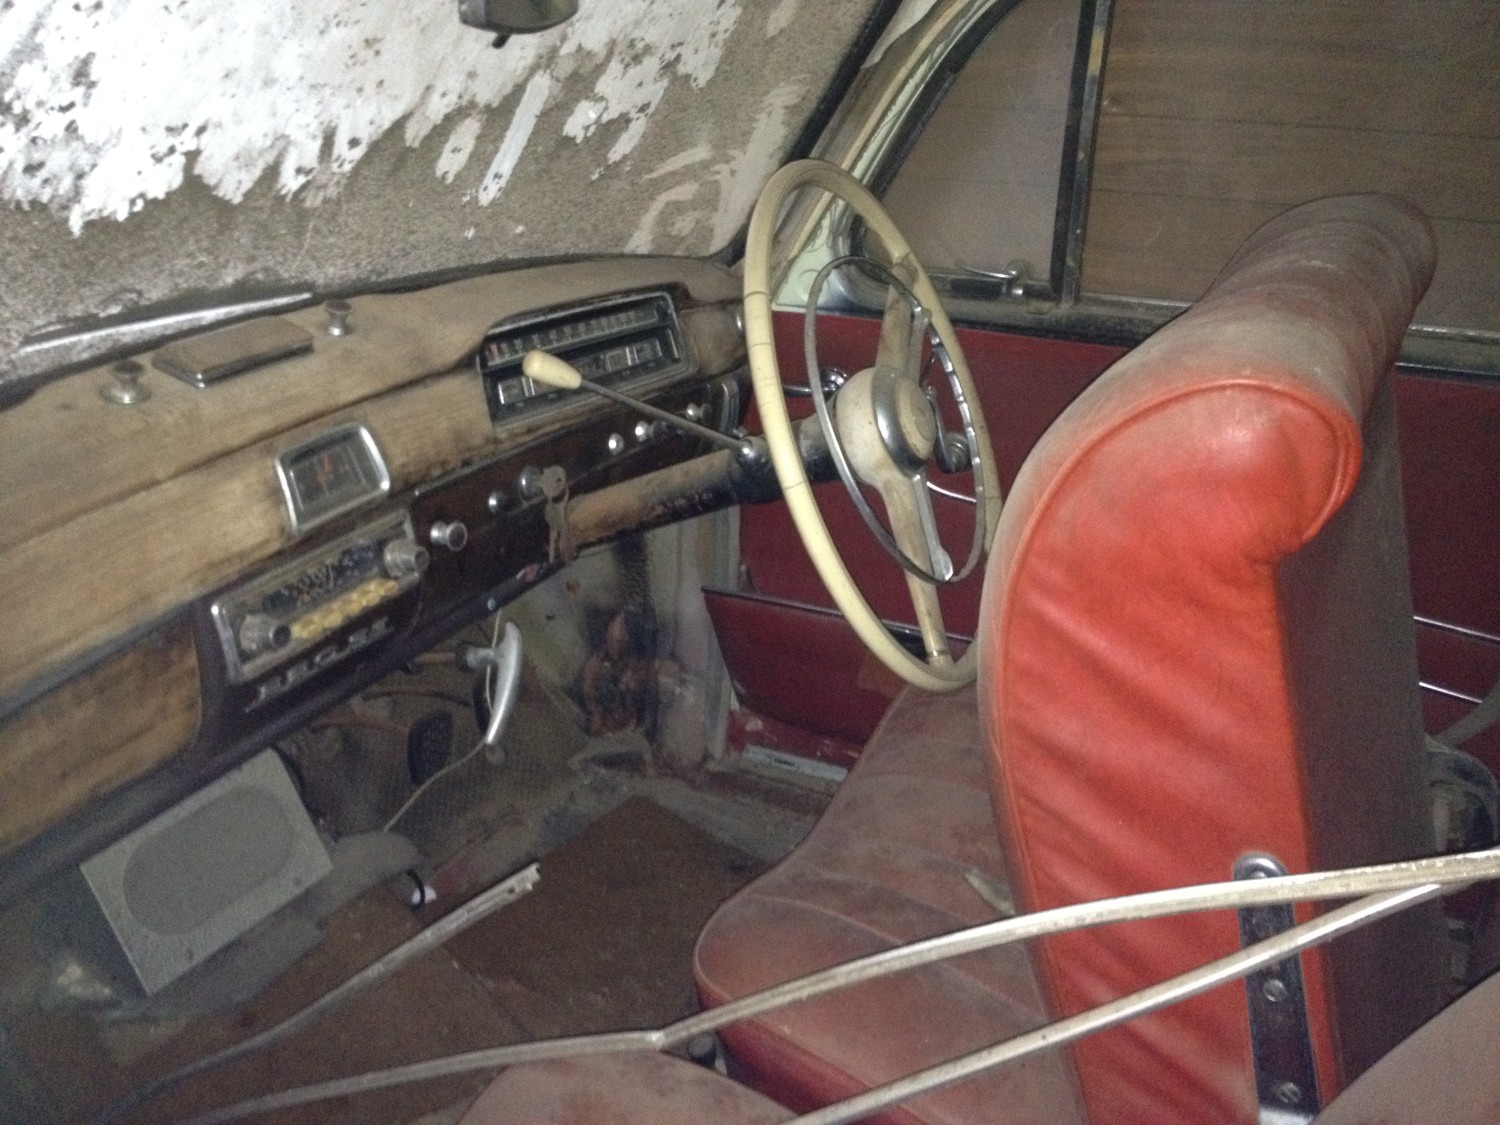 1959 Mercedes-Benz 220 SE